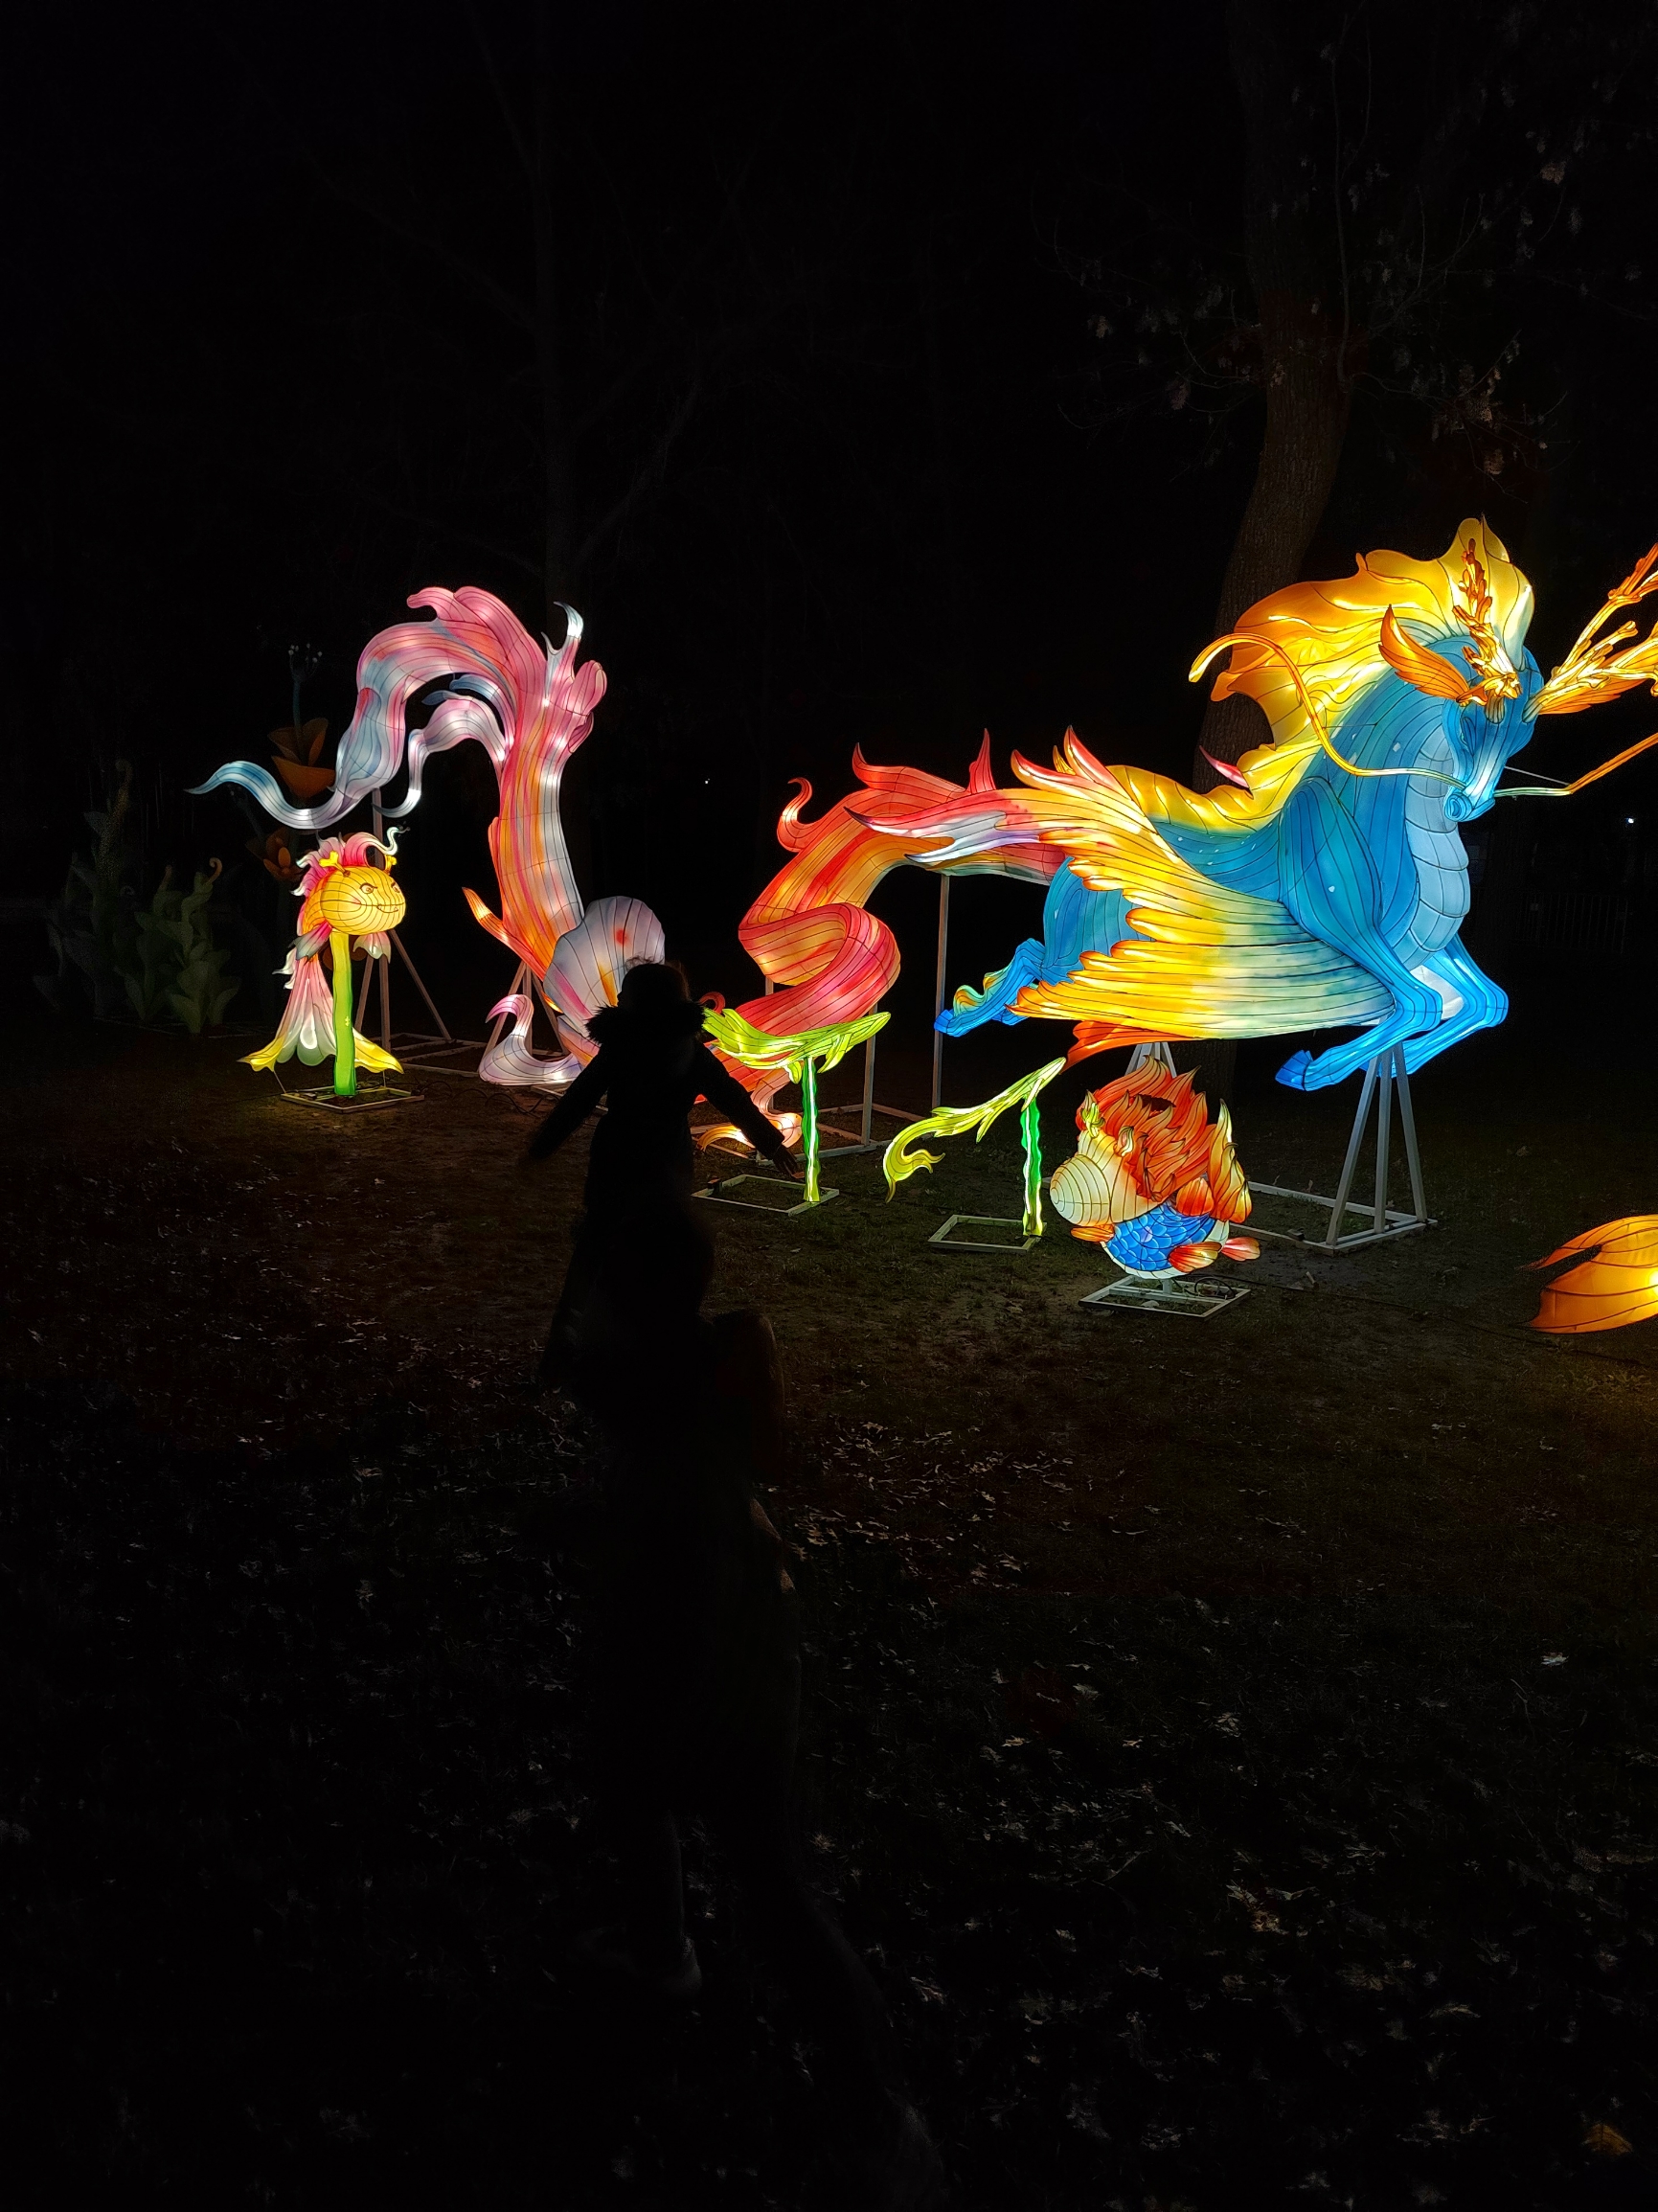 在巴黎的气候公园近lv博物馆举办的上海豫园设计的山海经灯展很好的展现了中国文化。里。里面还有中国传统